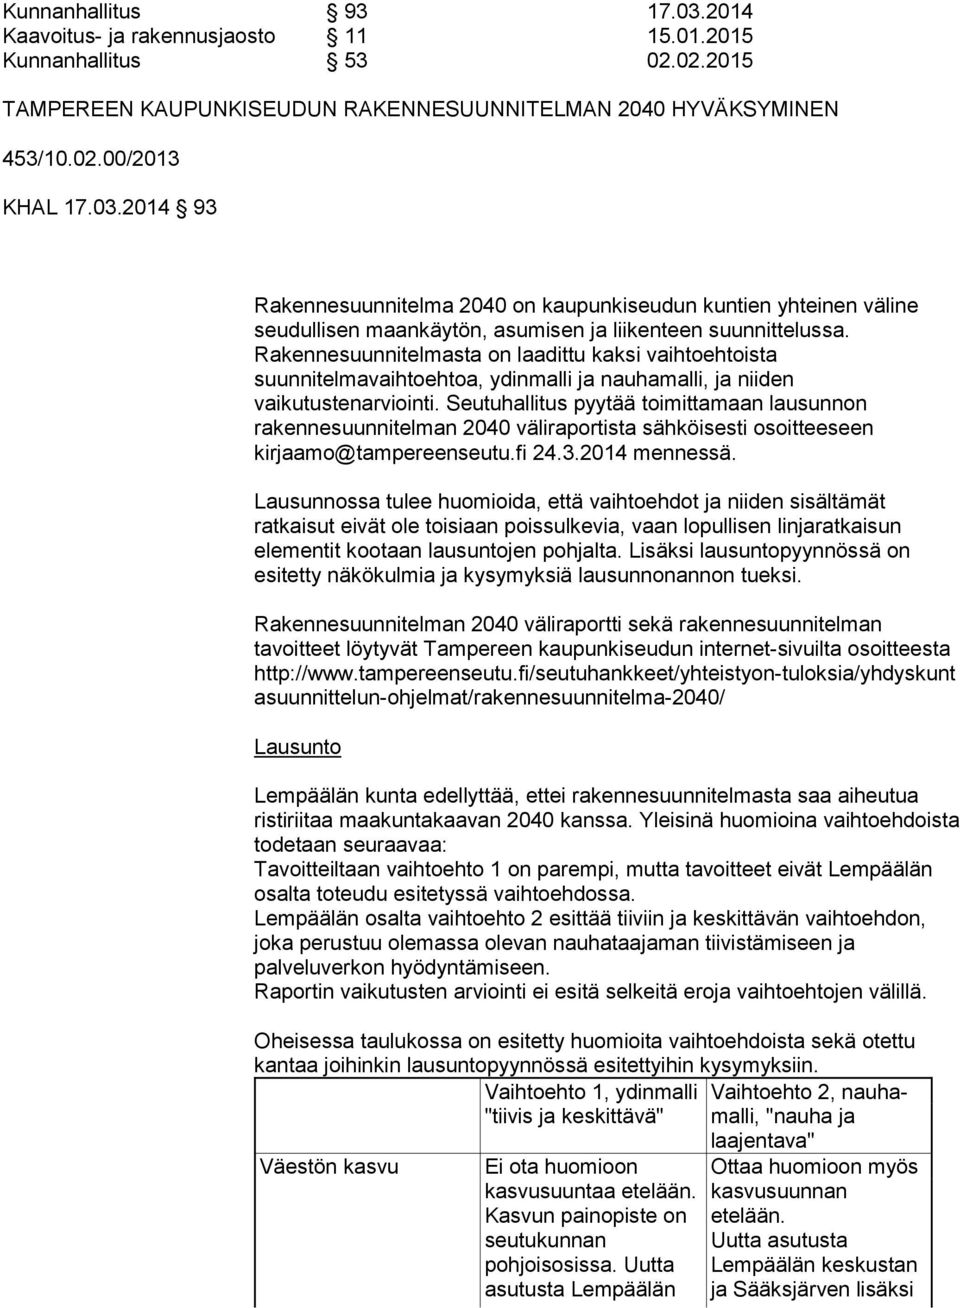 Seutuhallitus pyytää toimittamaan lausunnon rakennesuunnitelman 2040 väliraportista sähköisesti osoitteeseen kirjaamo@tampereenseutu.fi 24.3.2014 mennessä.